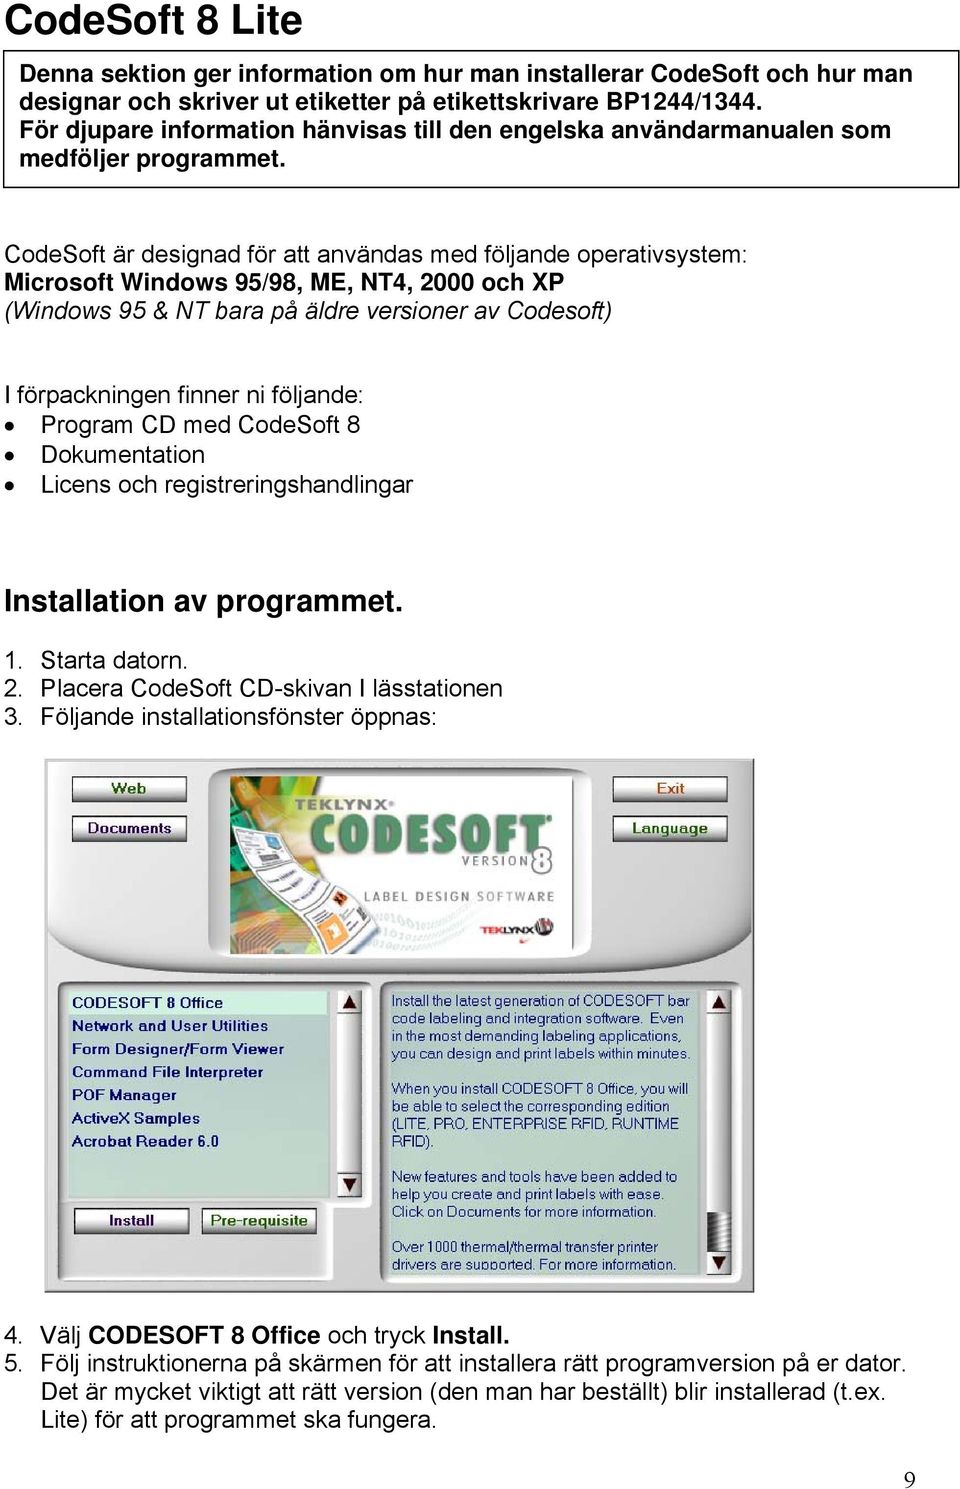 CodeSoft är designad för att användas med följande operativsystem: Microsoft Windows 95/98, ME, NT4, 2000 och XP (Windows 95 & NT bara på äldre versioner av Codesoft) I förpackningen finner ni